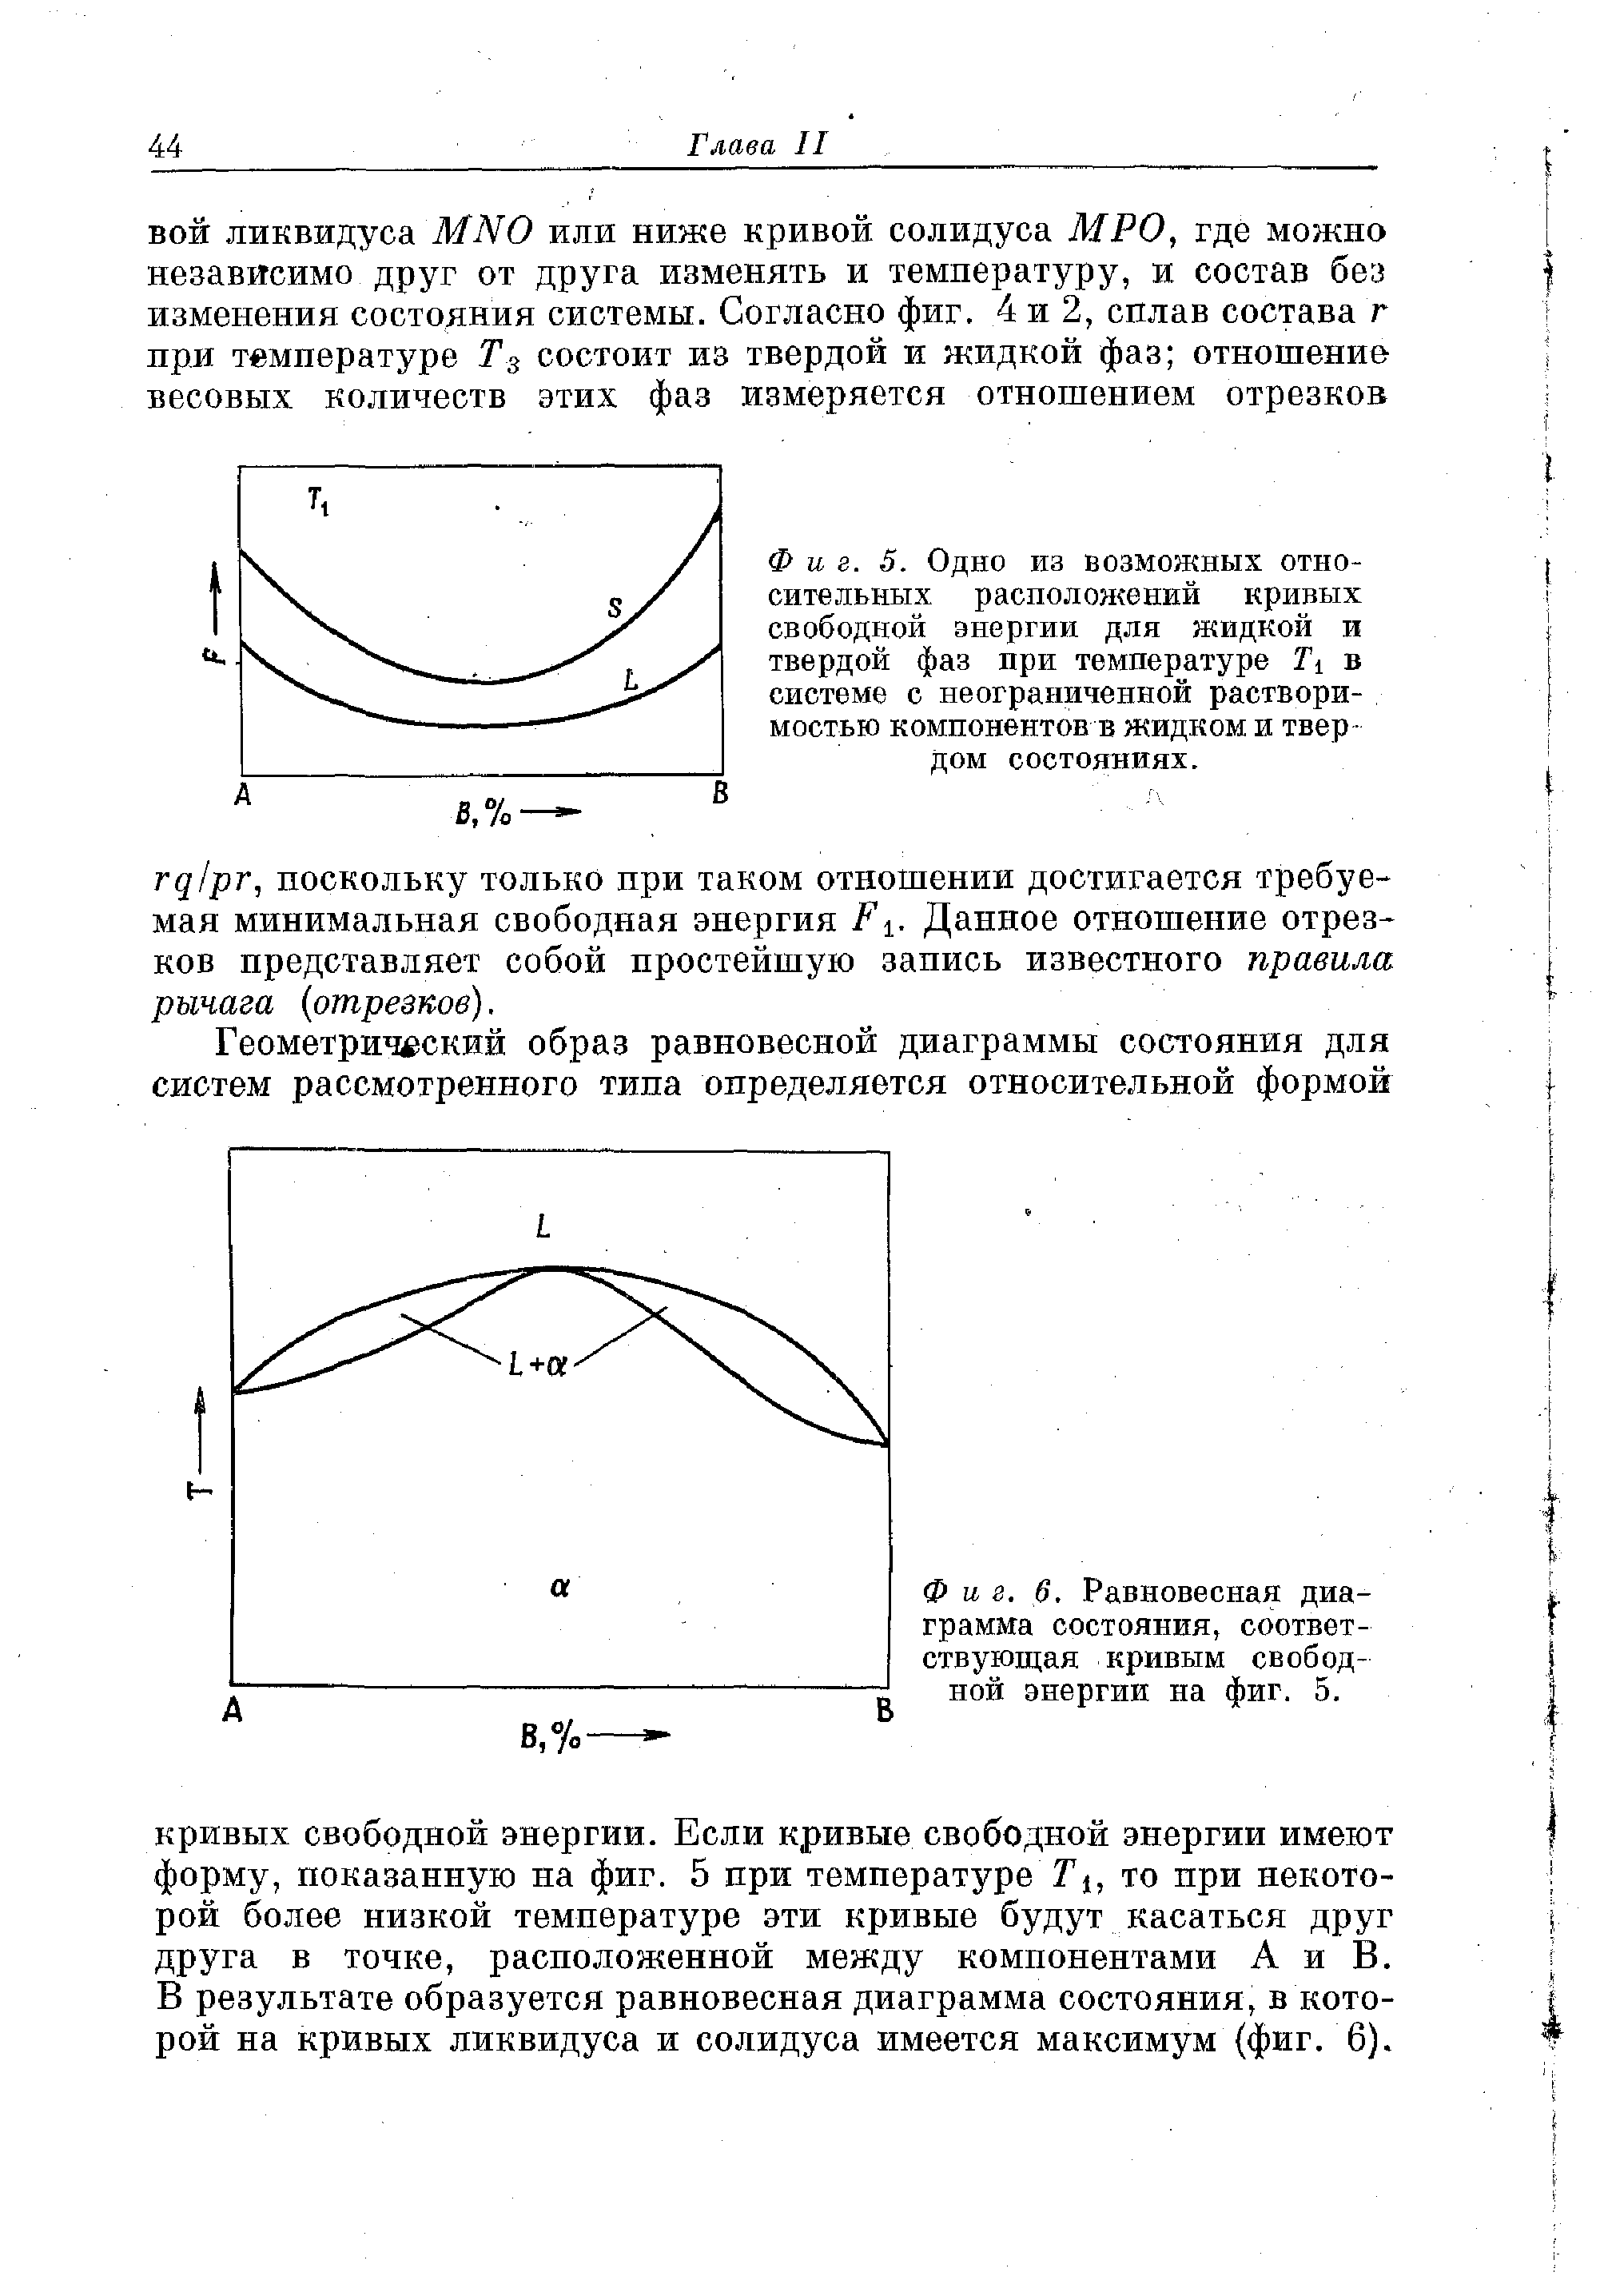 Фиг. 6. <a href="/info/111781">Равновесная диаграмма состояния</a>, соответствующая кривым свободной энергии на фиг. 5.
